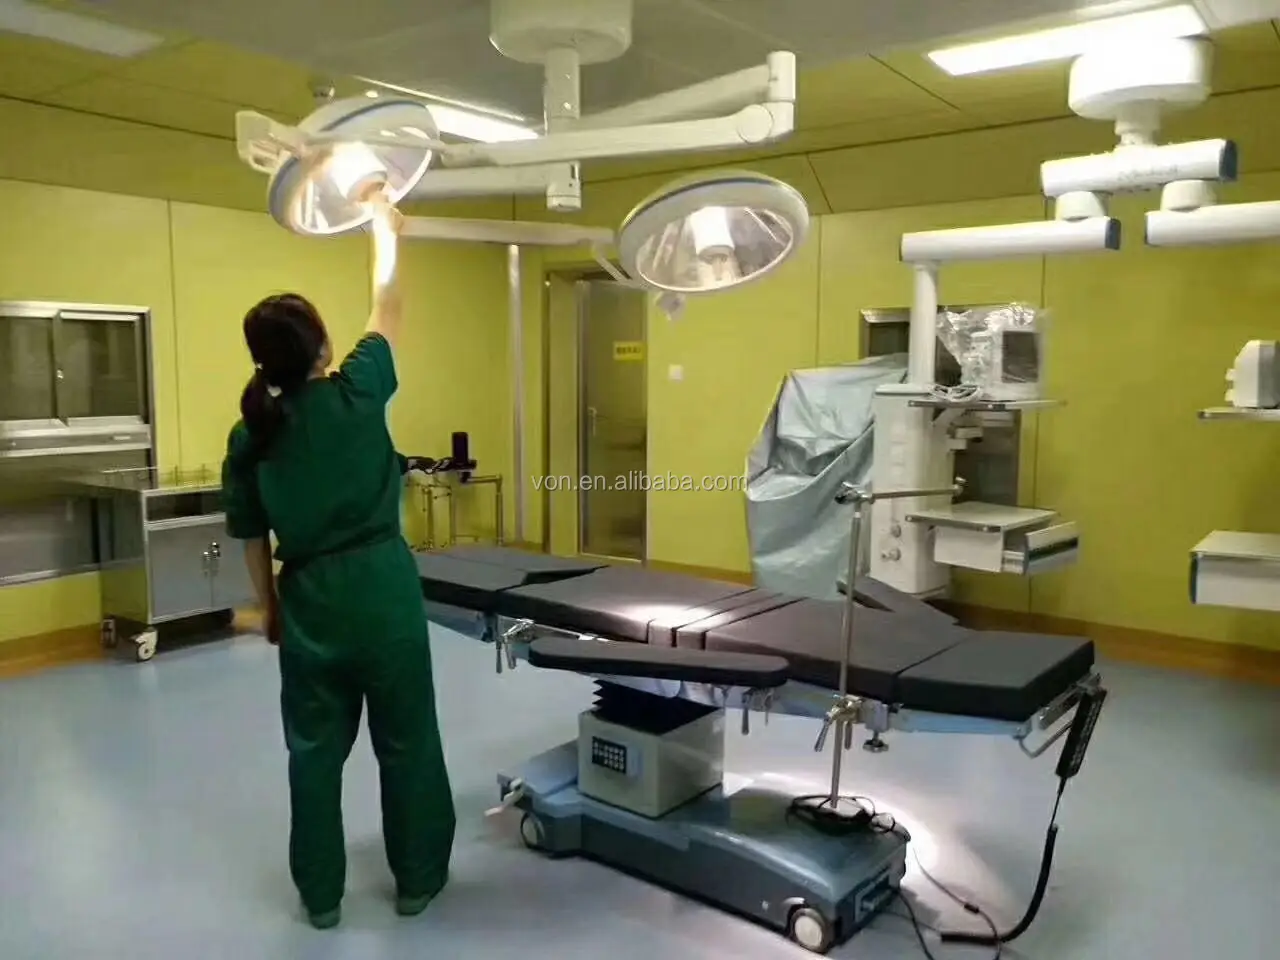 лампы для операционного стола